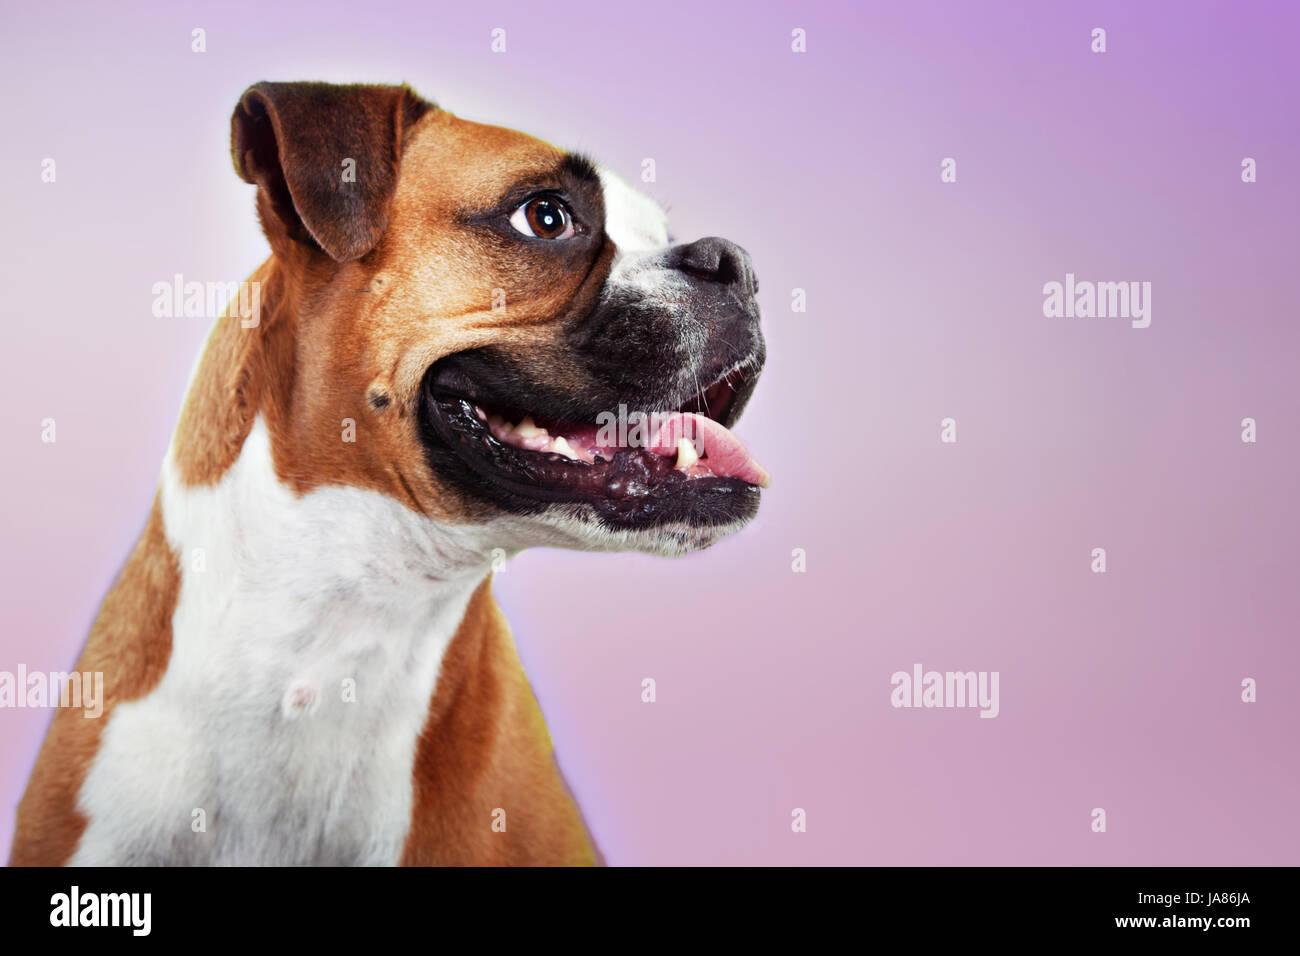 Retrato de estudio de un perro boxer en perfil, sonriente y mirando alerta y ansioso. Foto de stock